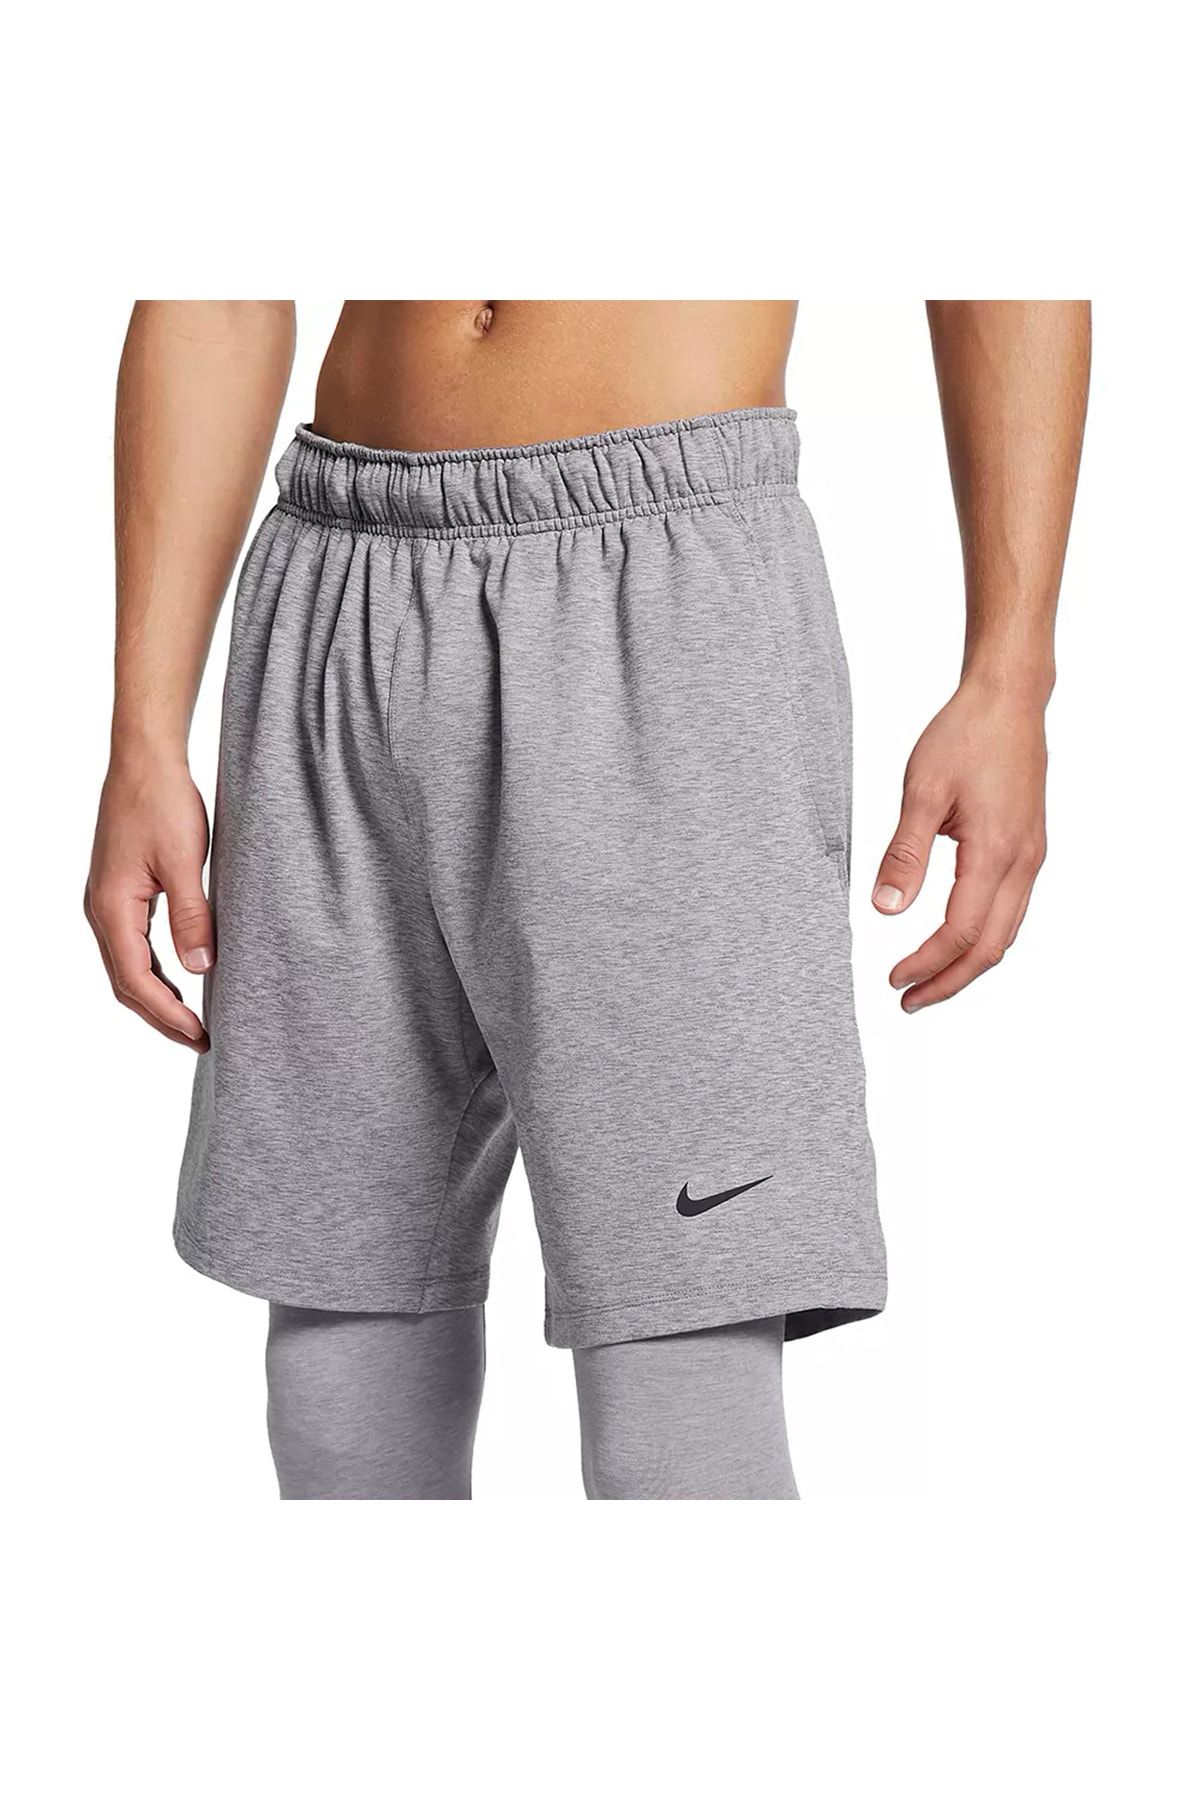 Nike Yoga Men's Athlete Bv4036-564 - Trendyol